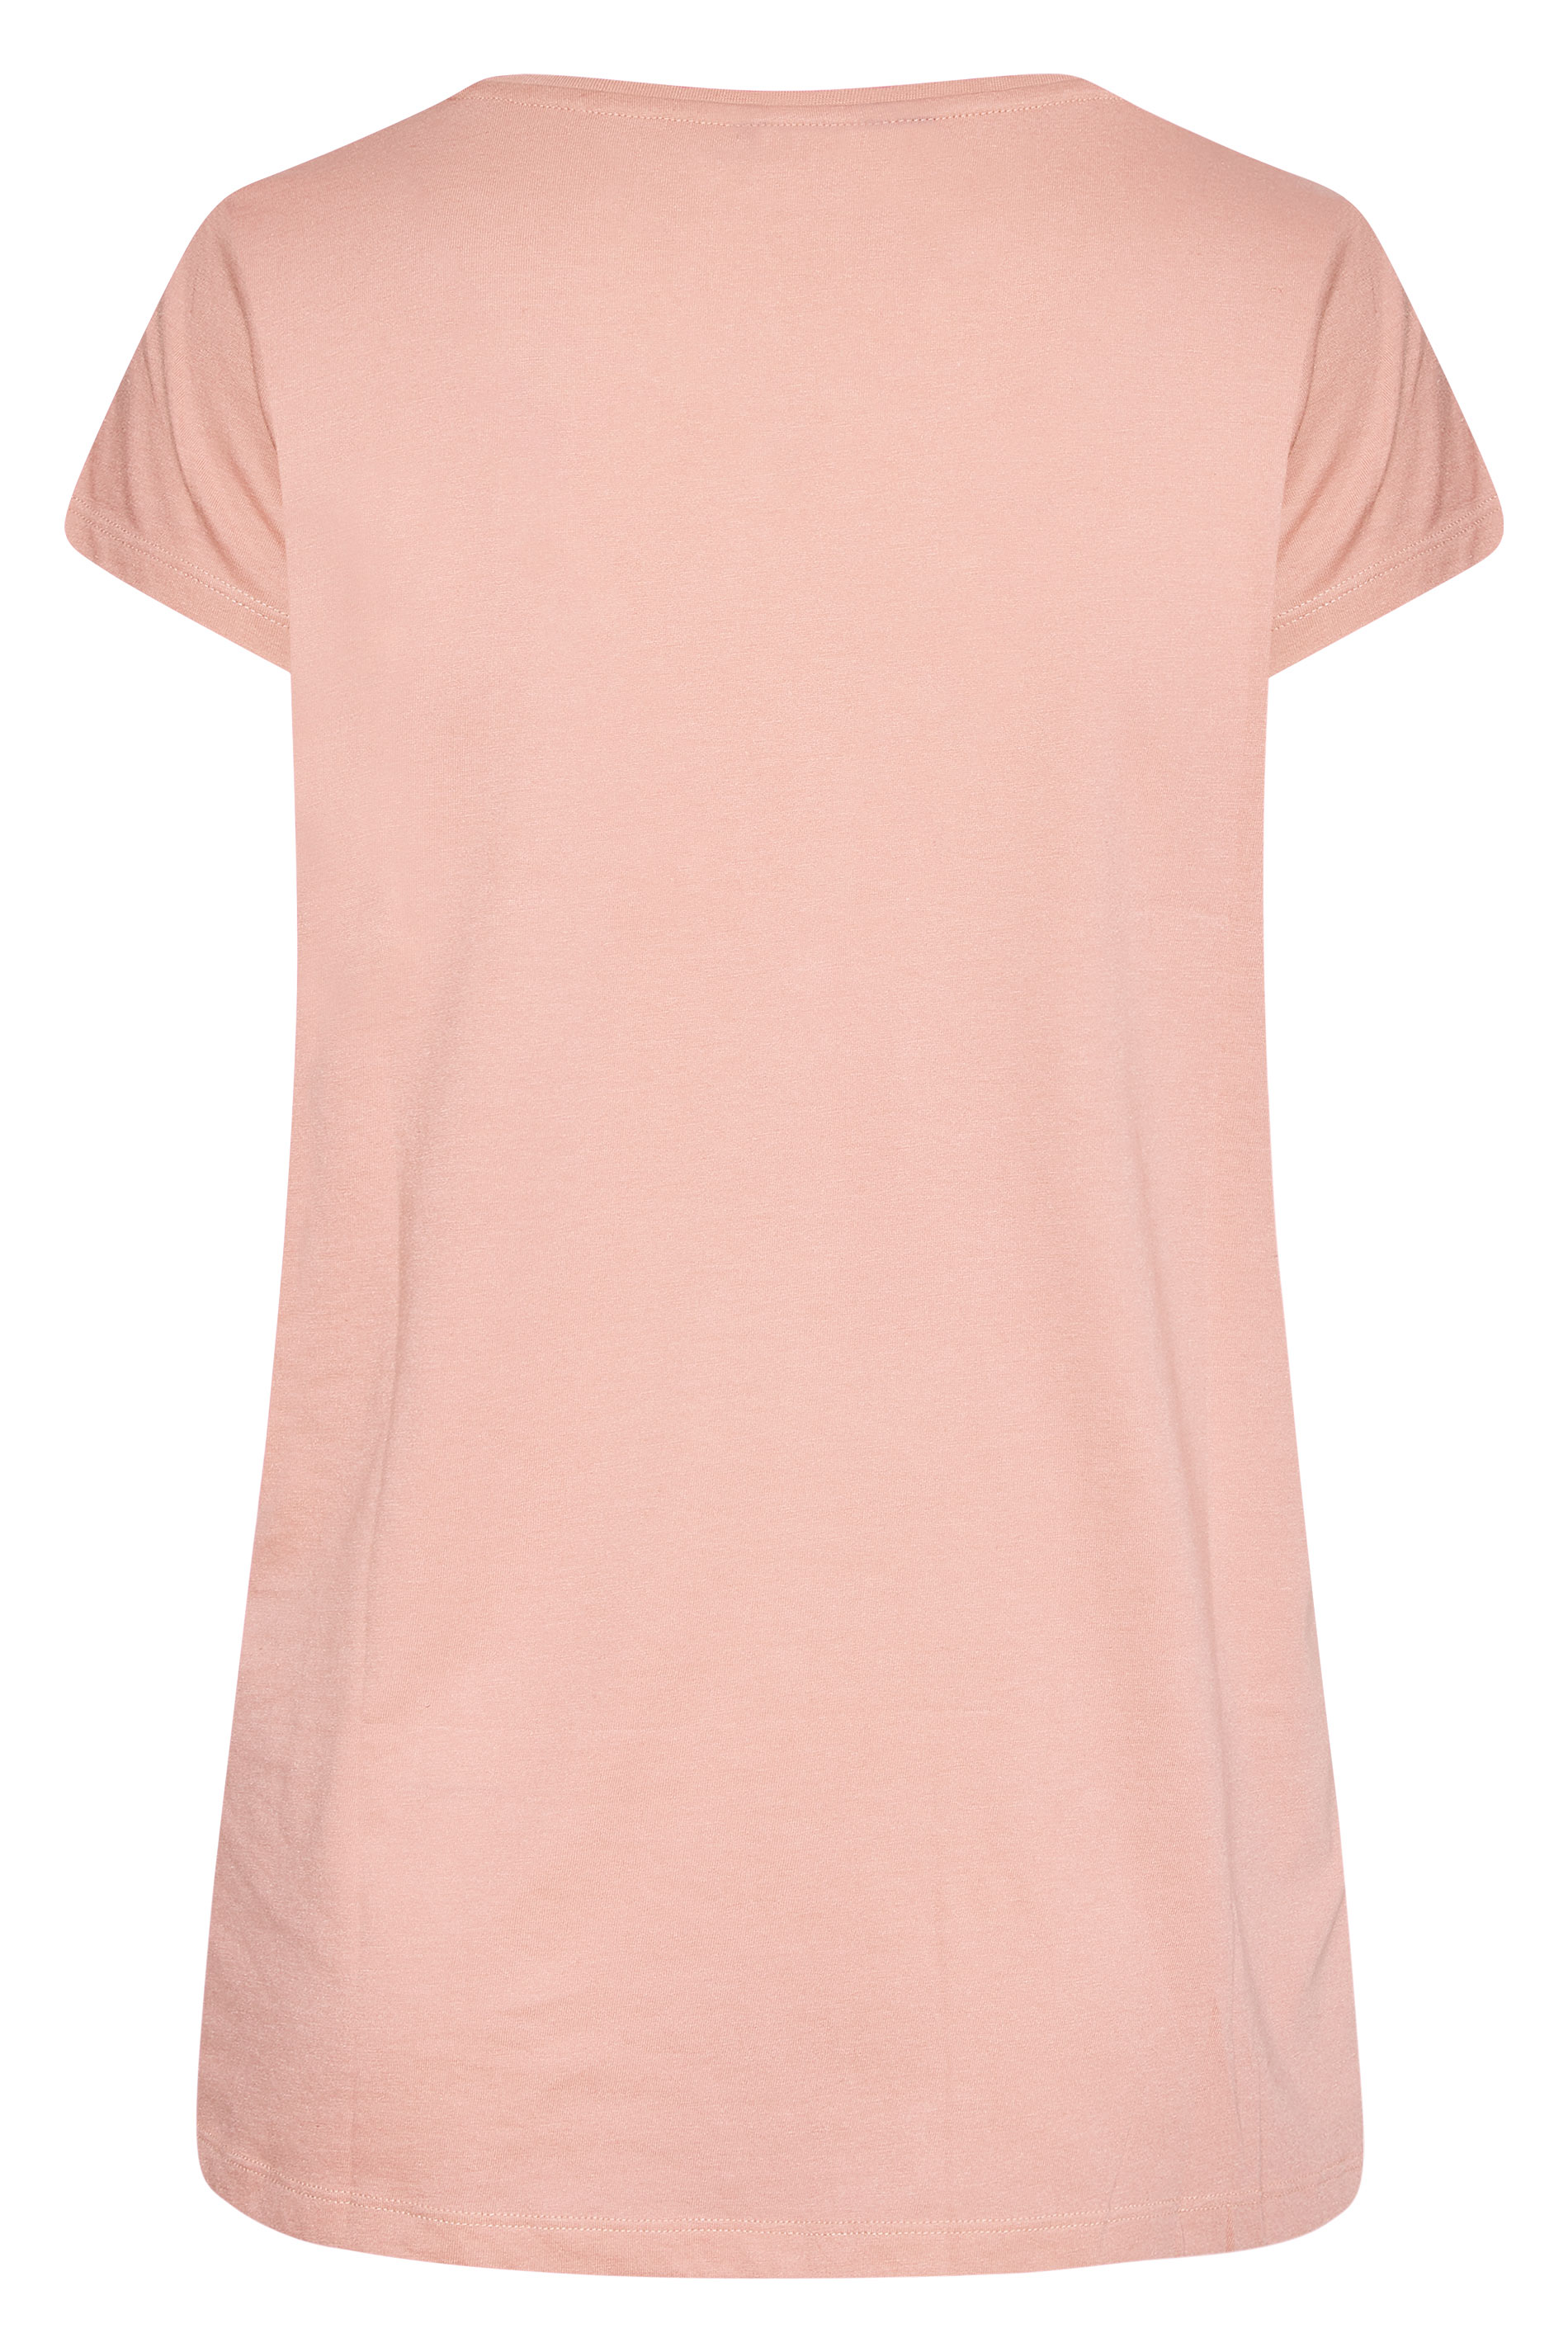 Grande taille  Tops Grande taille  T-Shirts Basiques & Débardeurs | T-Shirt Rose Poudré en Jersey - ZU71883